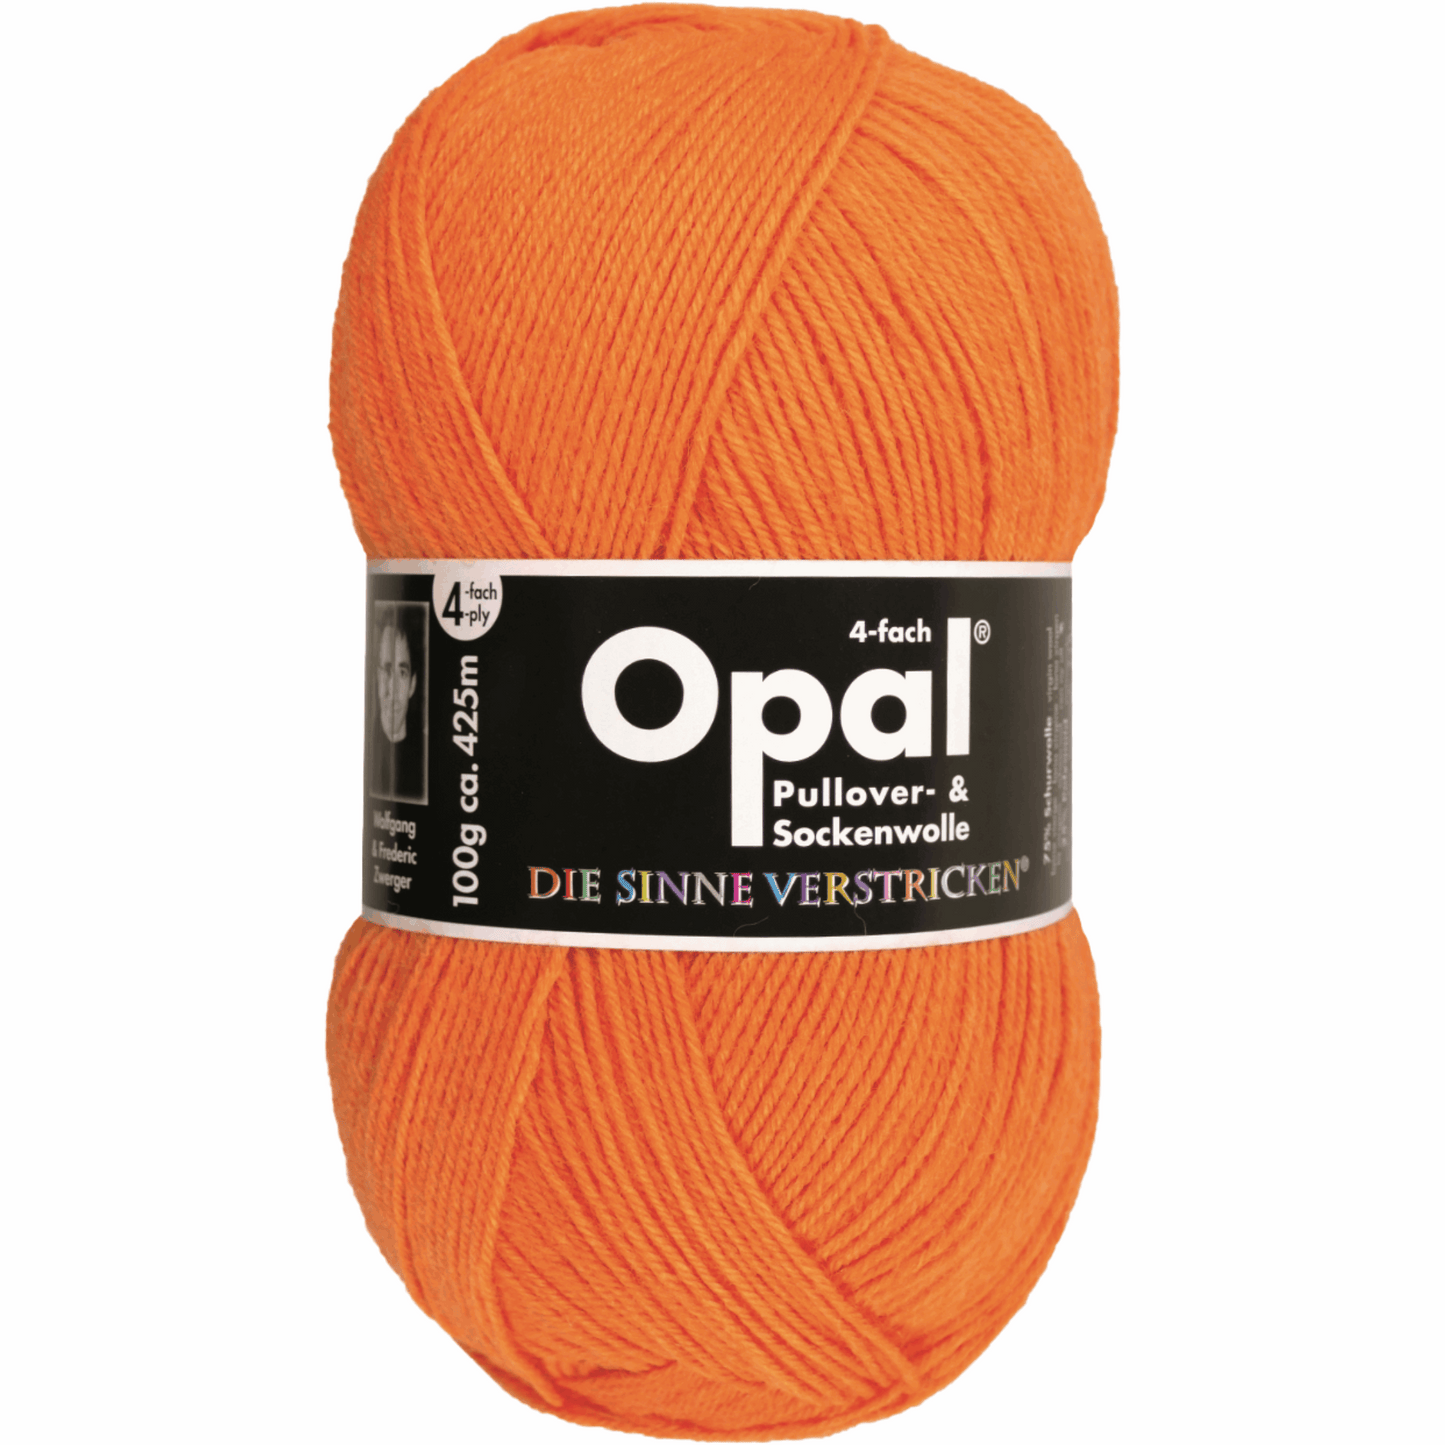 Opal plain 4 threads. 100g 2011/12, 97760, color neon orange 2013